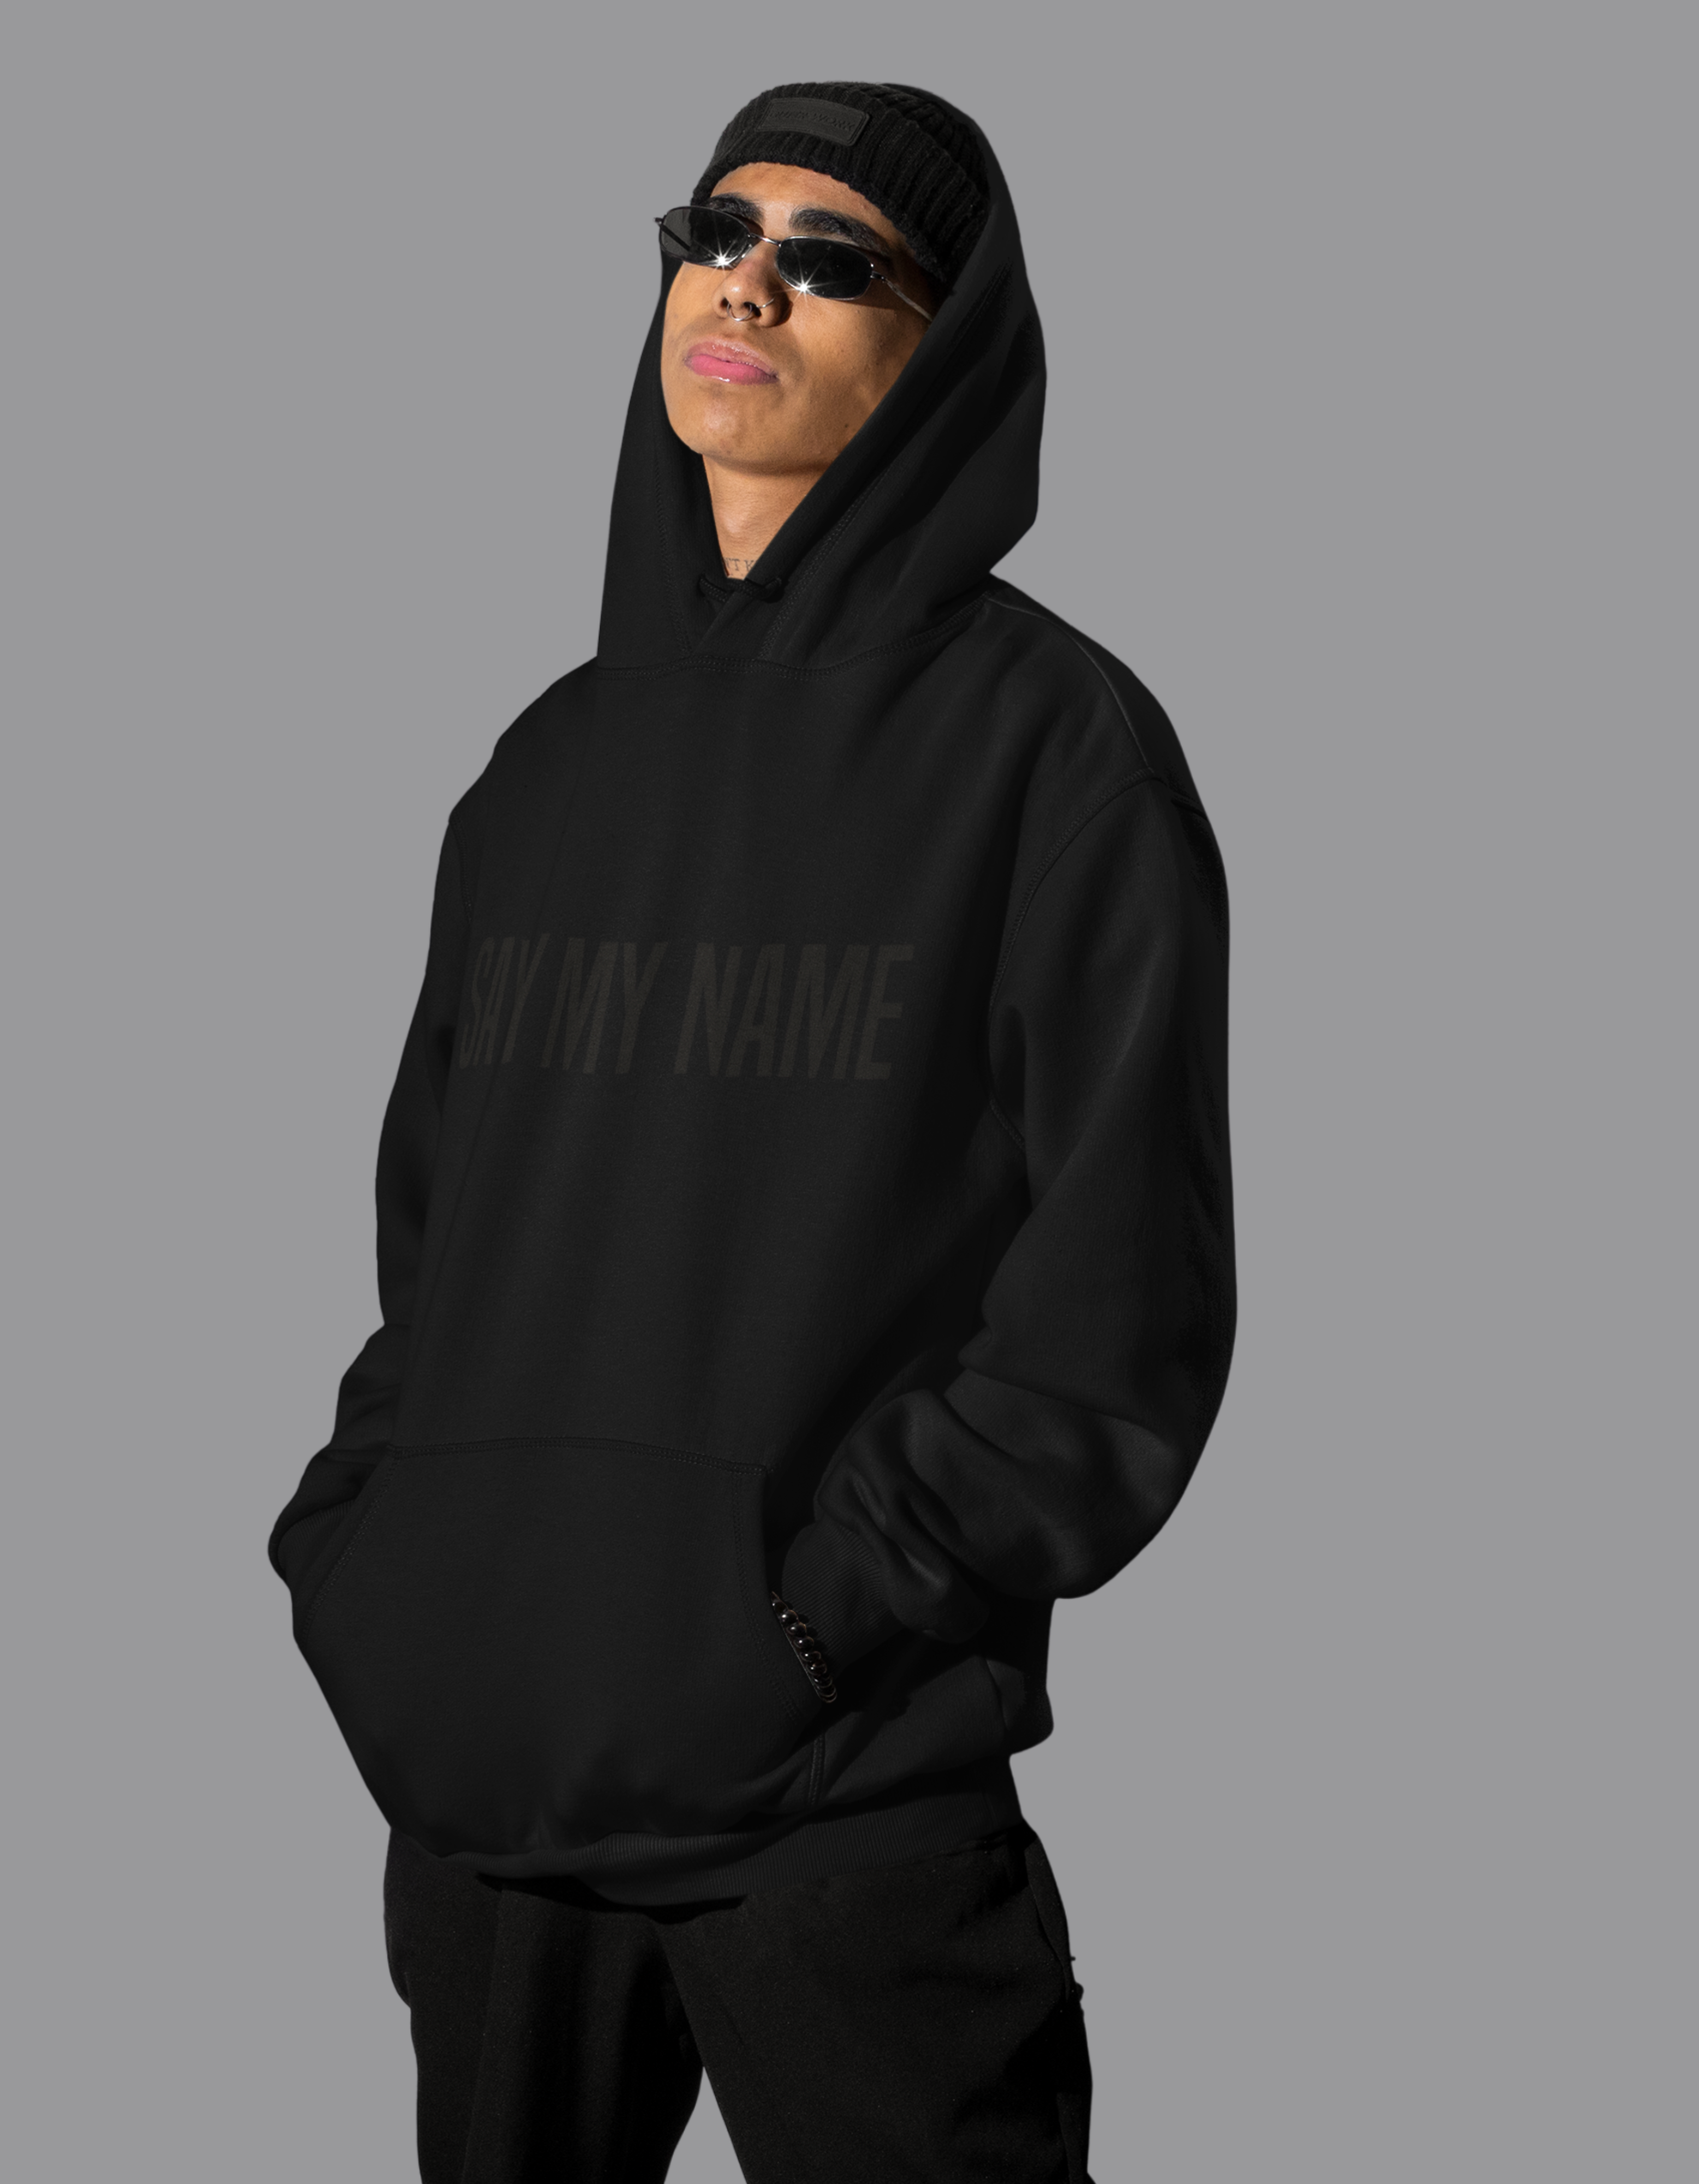 Le hoodie "Say My Name" de Crazy Sir-G est un vêtement confortable et stylé, idéal pour les hommes qui cherchent à ajouter une touche de cool à leur look.